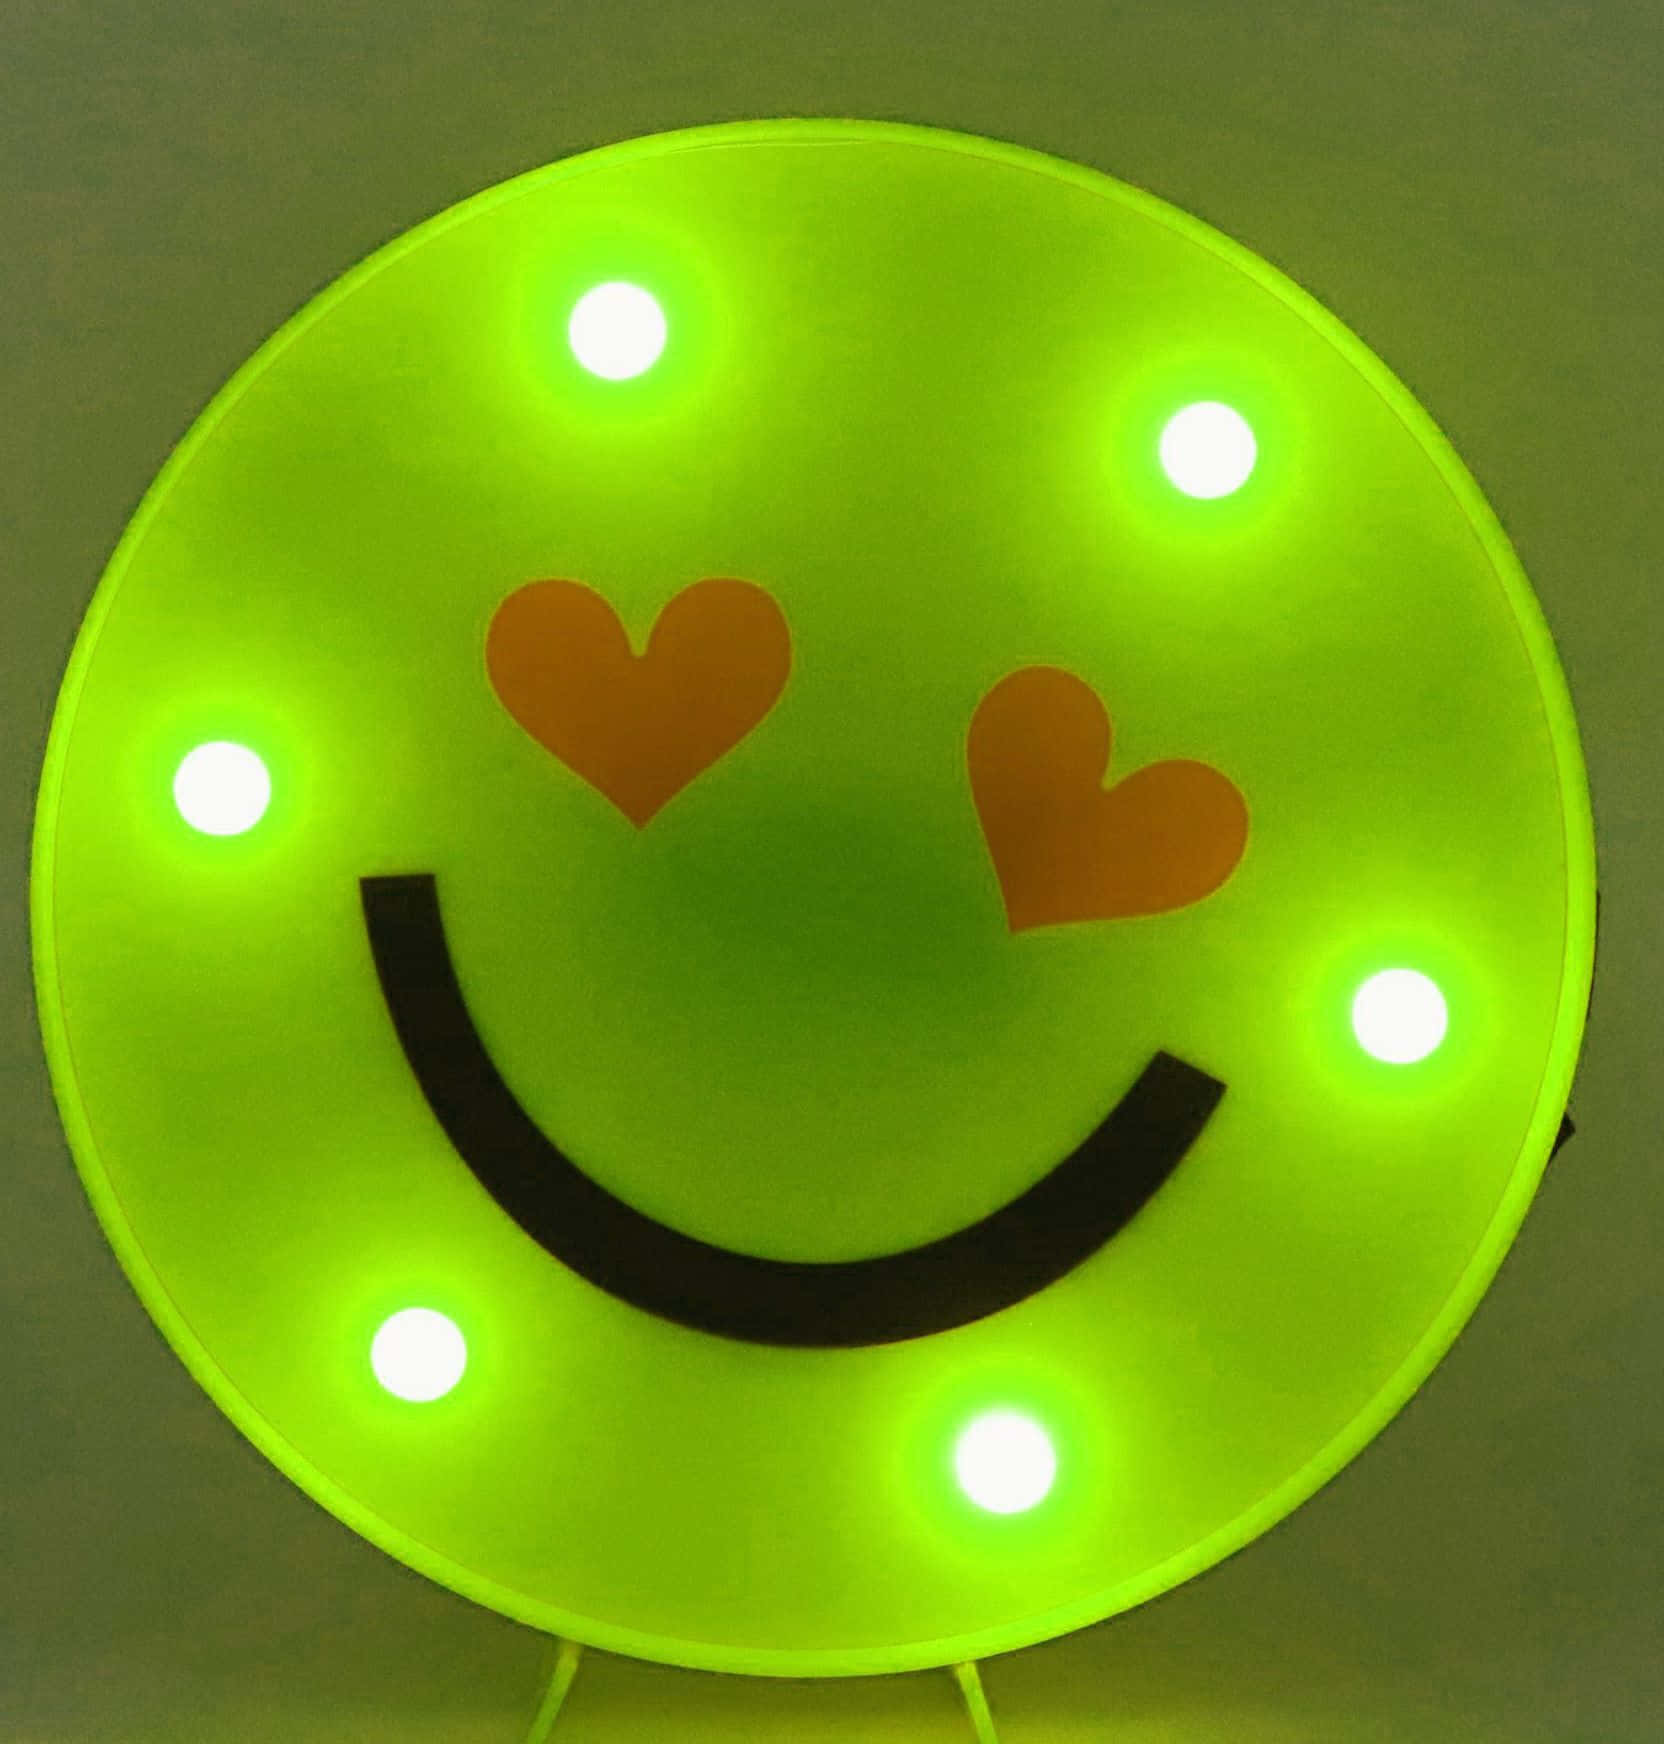 Eingrünes Smiley-gesicht Mit Lichtern Darauf.